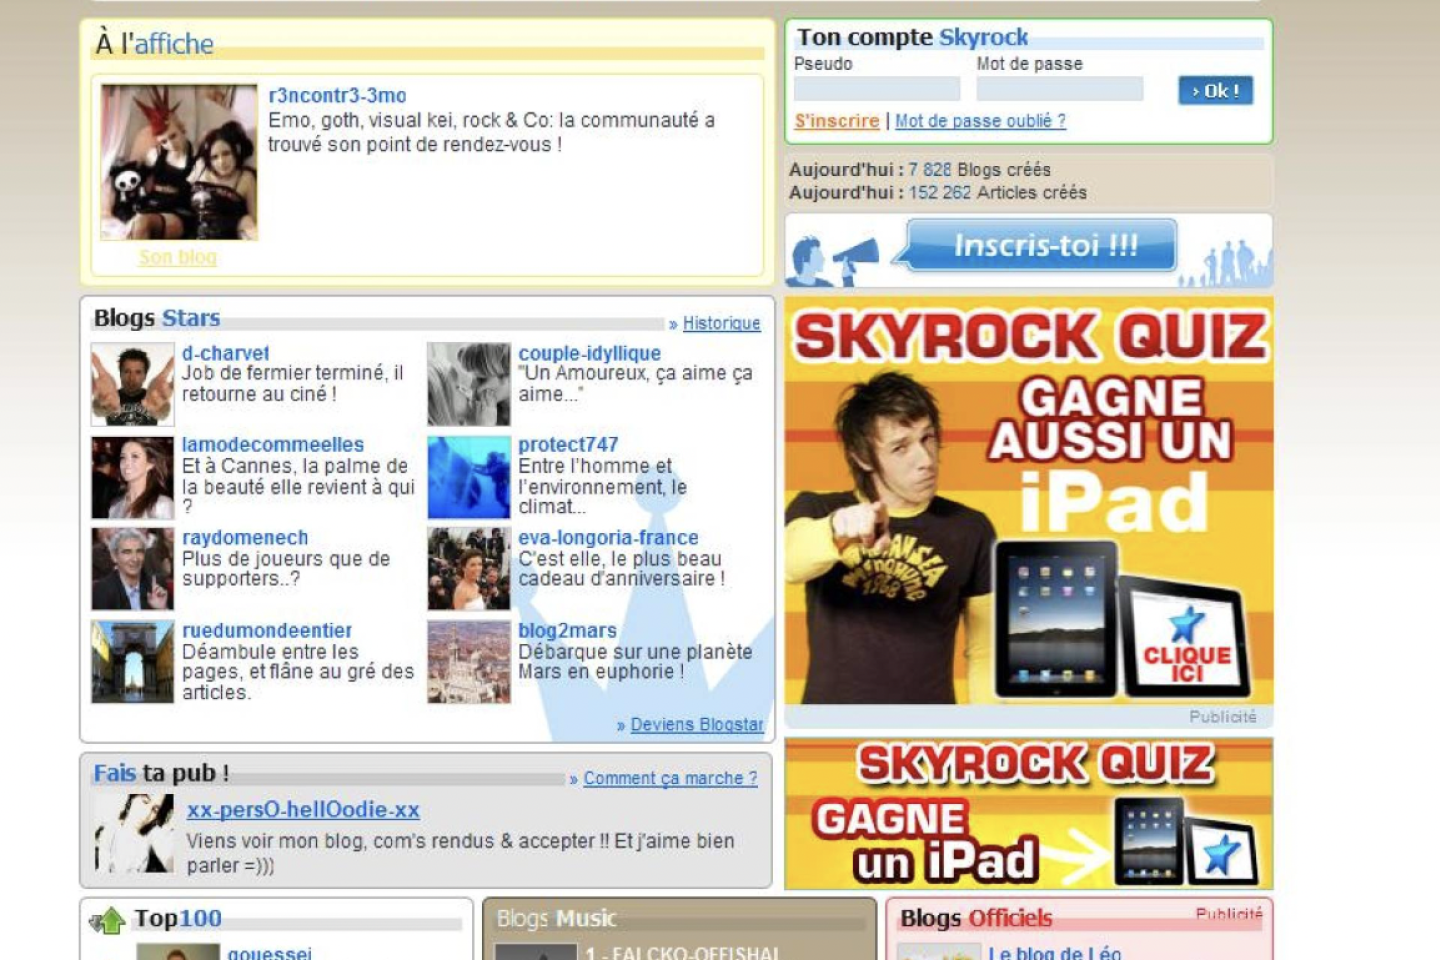 Skyblog, la plus grande plate-forme de blogs française dans les années 2000, ferme lundi